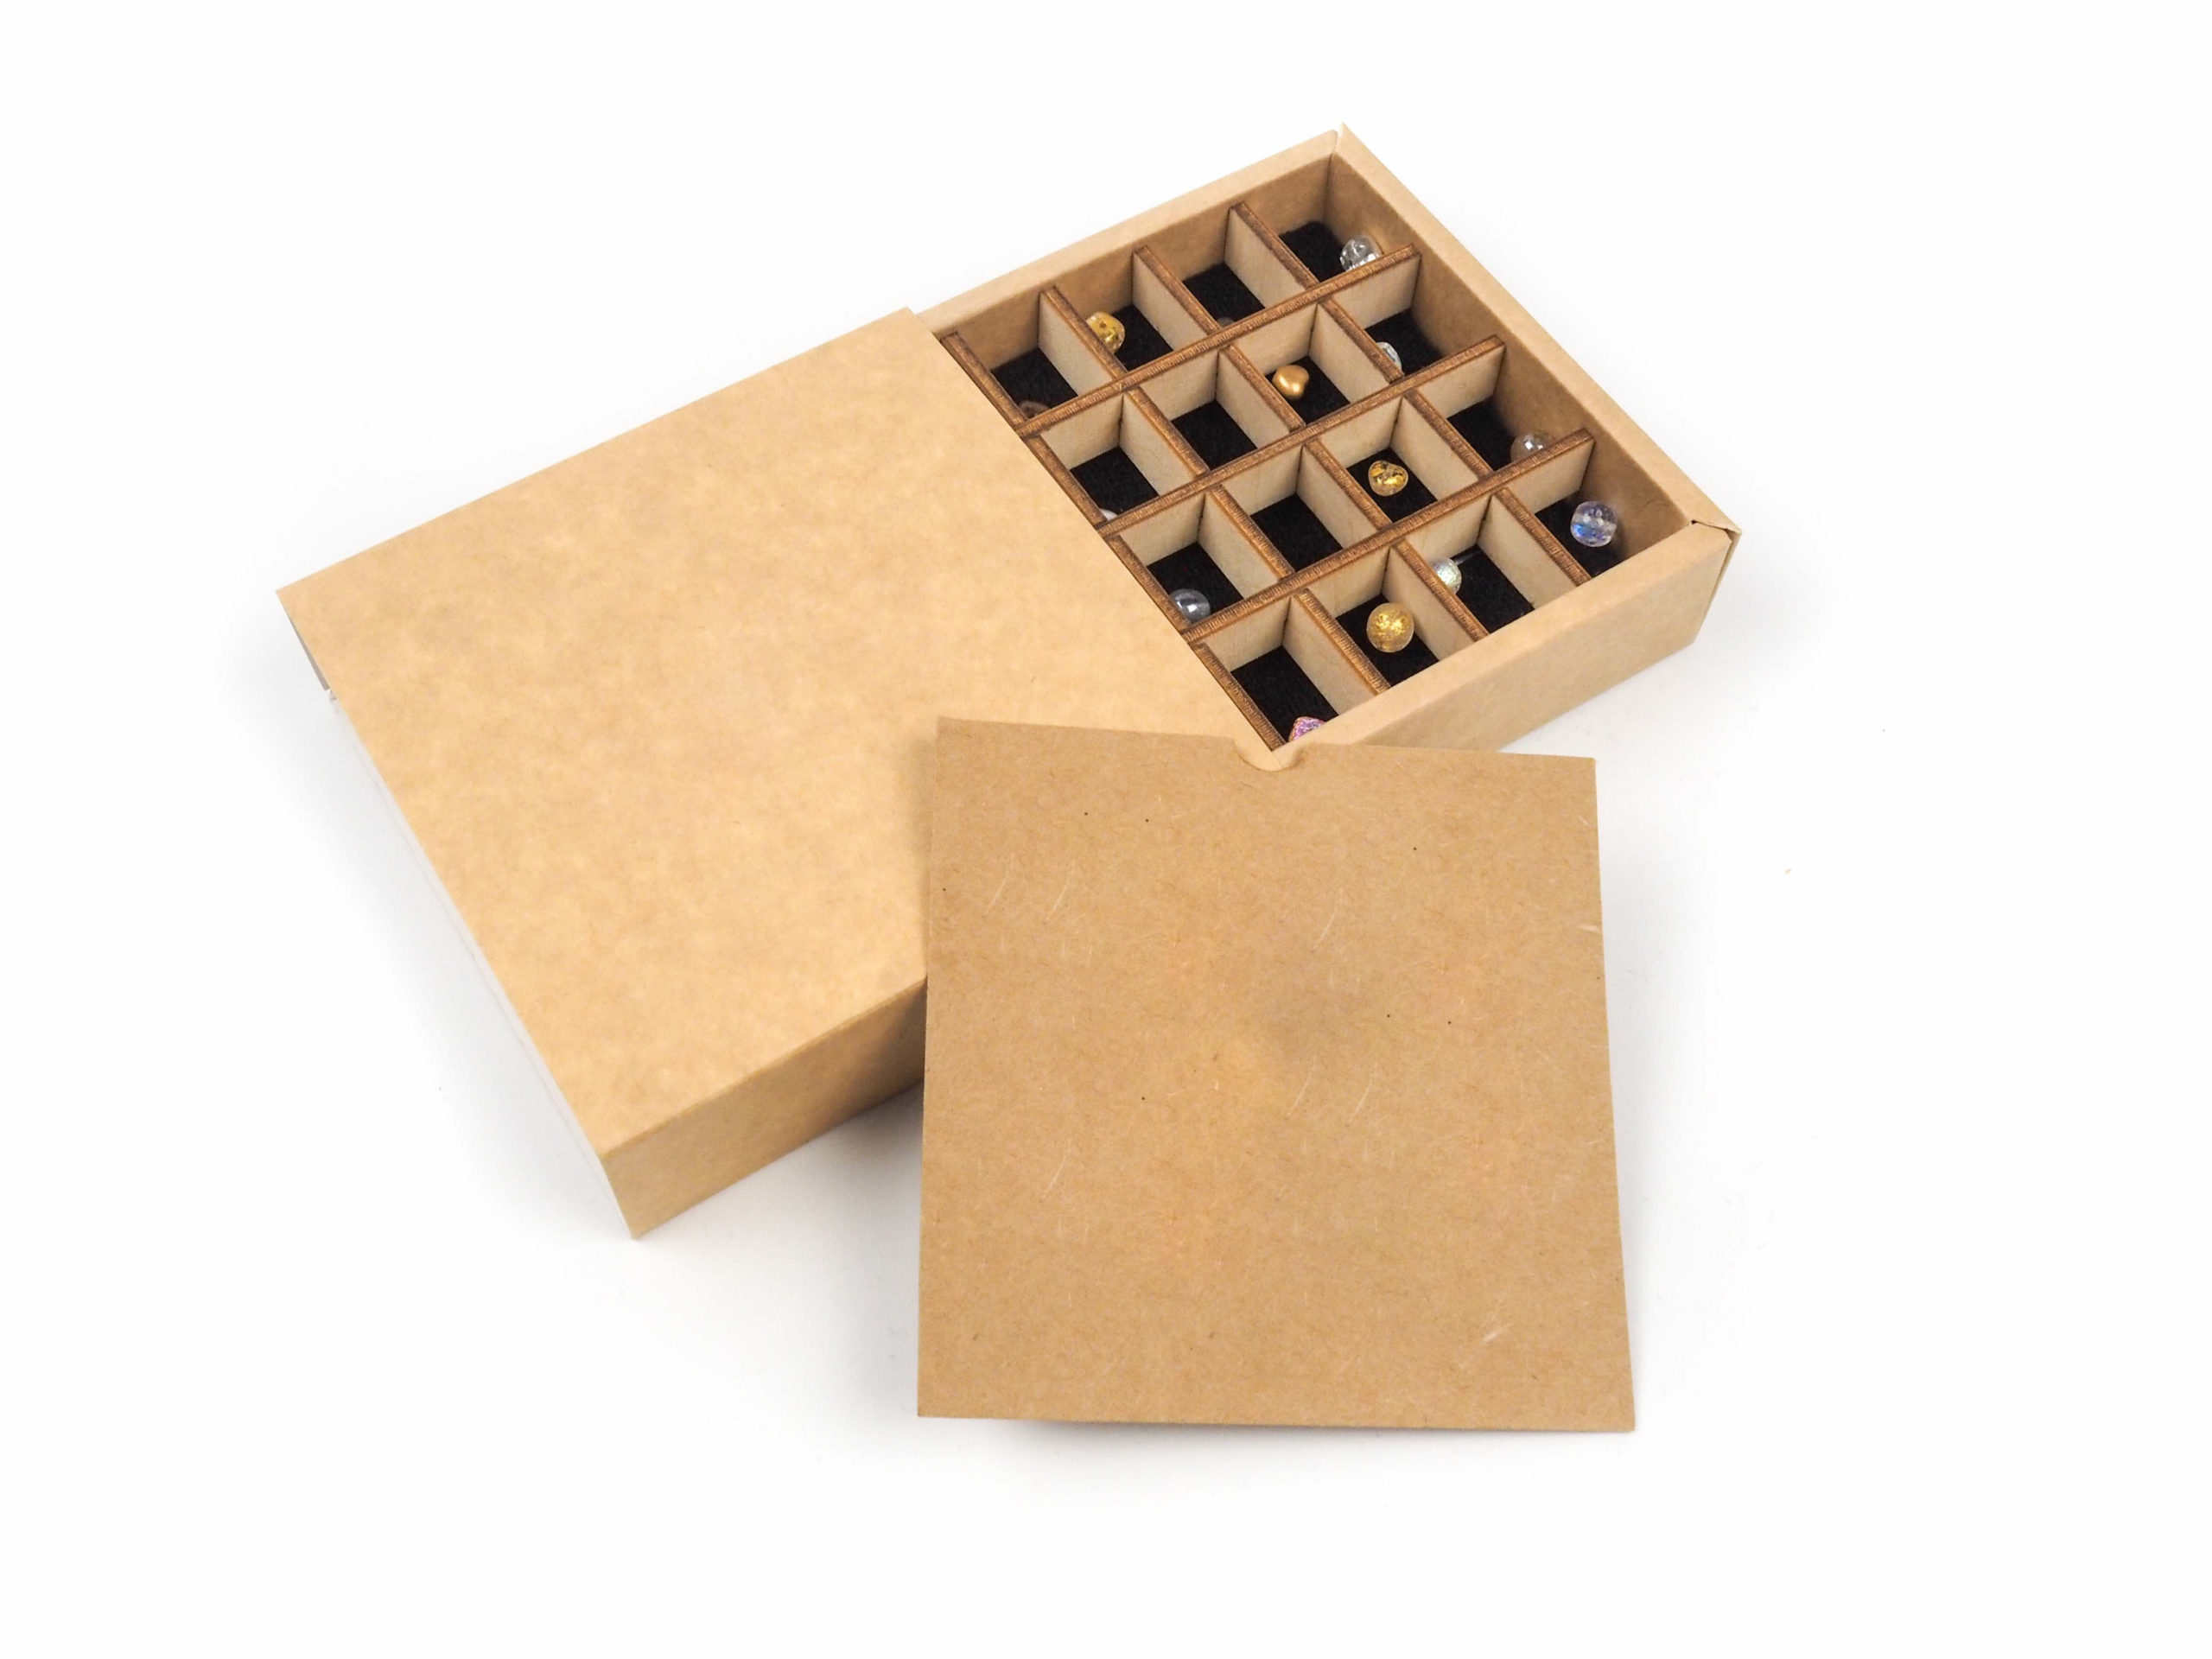 Dárková krabička byla vyrobena na korálky s výsuvným vnitřkem, který byl doplněn o dřevěný rozdělovač a pěnový podklad v černé barvě.